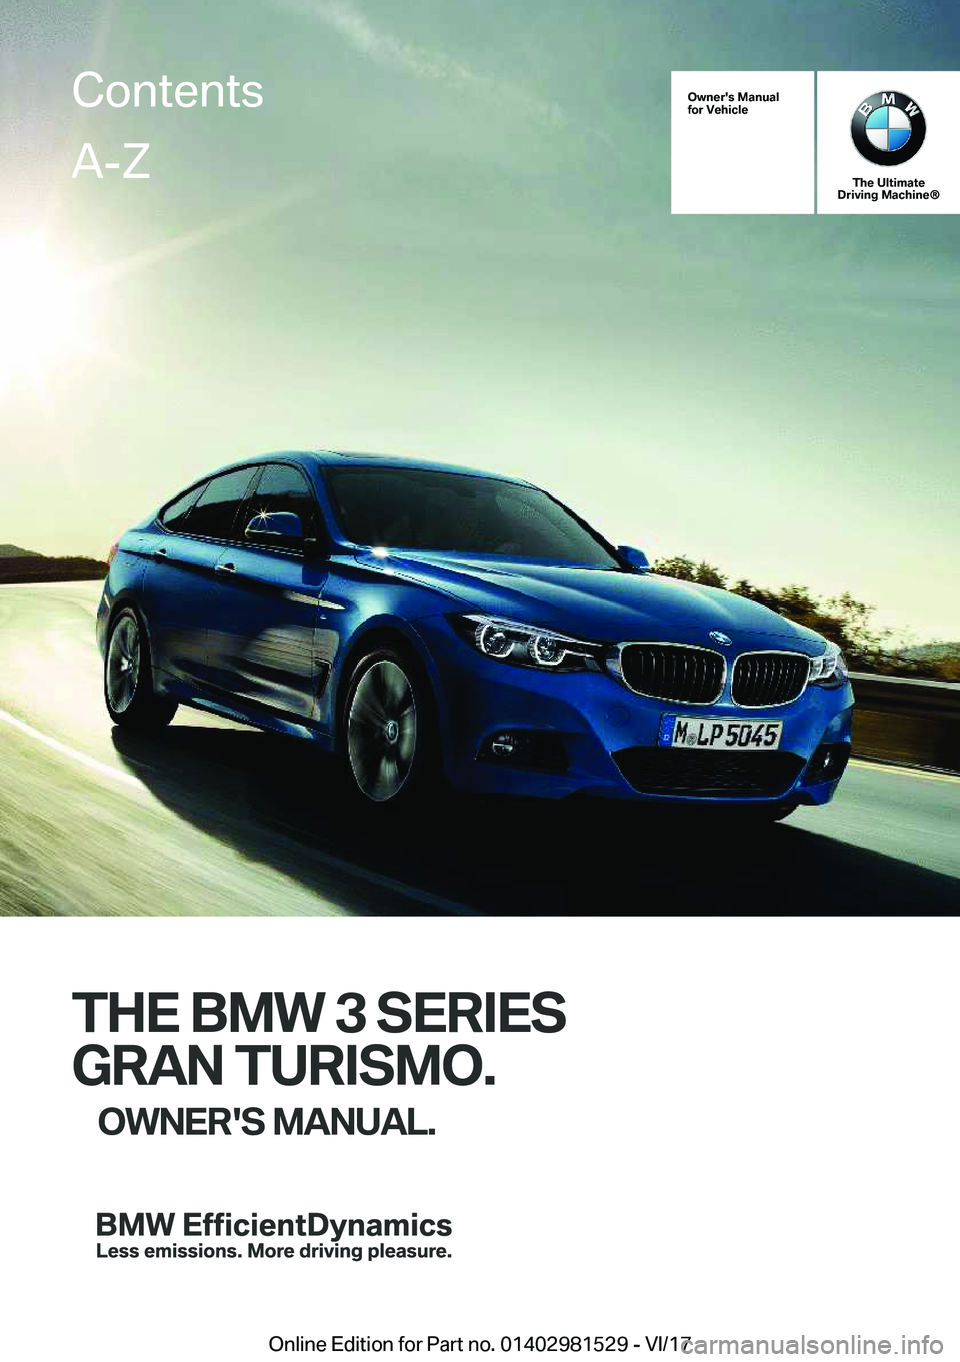 BMW 3 SERIES GRAN TURISMO 2018  Owners Manual �O�w�n�e�r�'�s��M�a�n�u�a�l
�f�o�r��V�e�h�i�c�l�e
�T�h�e��U�l�t�i�m�a�t�e
�D�r�i�v�i�n�g��M�a�c�h�i�n�e�n
�T�H�E��B�M�W��3��S�E�R�I�E�S
�G�R�A�N��T�U�R�I�S�M�O�. �O�W�N�E�R�'�S��M�A�N